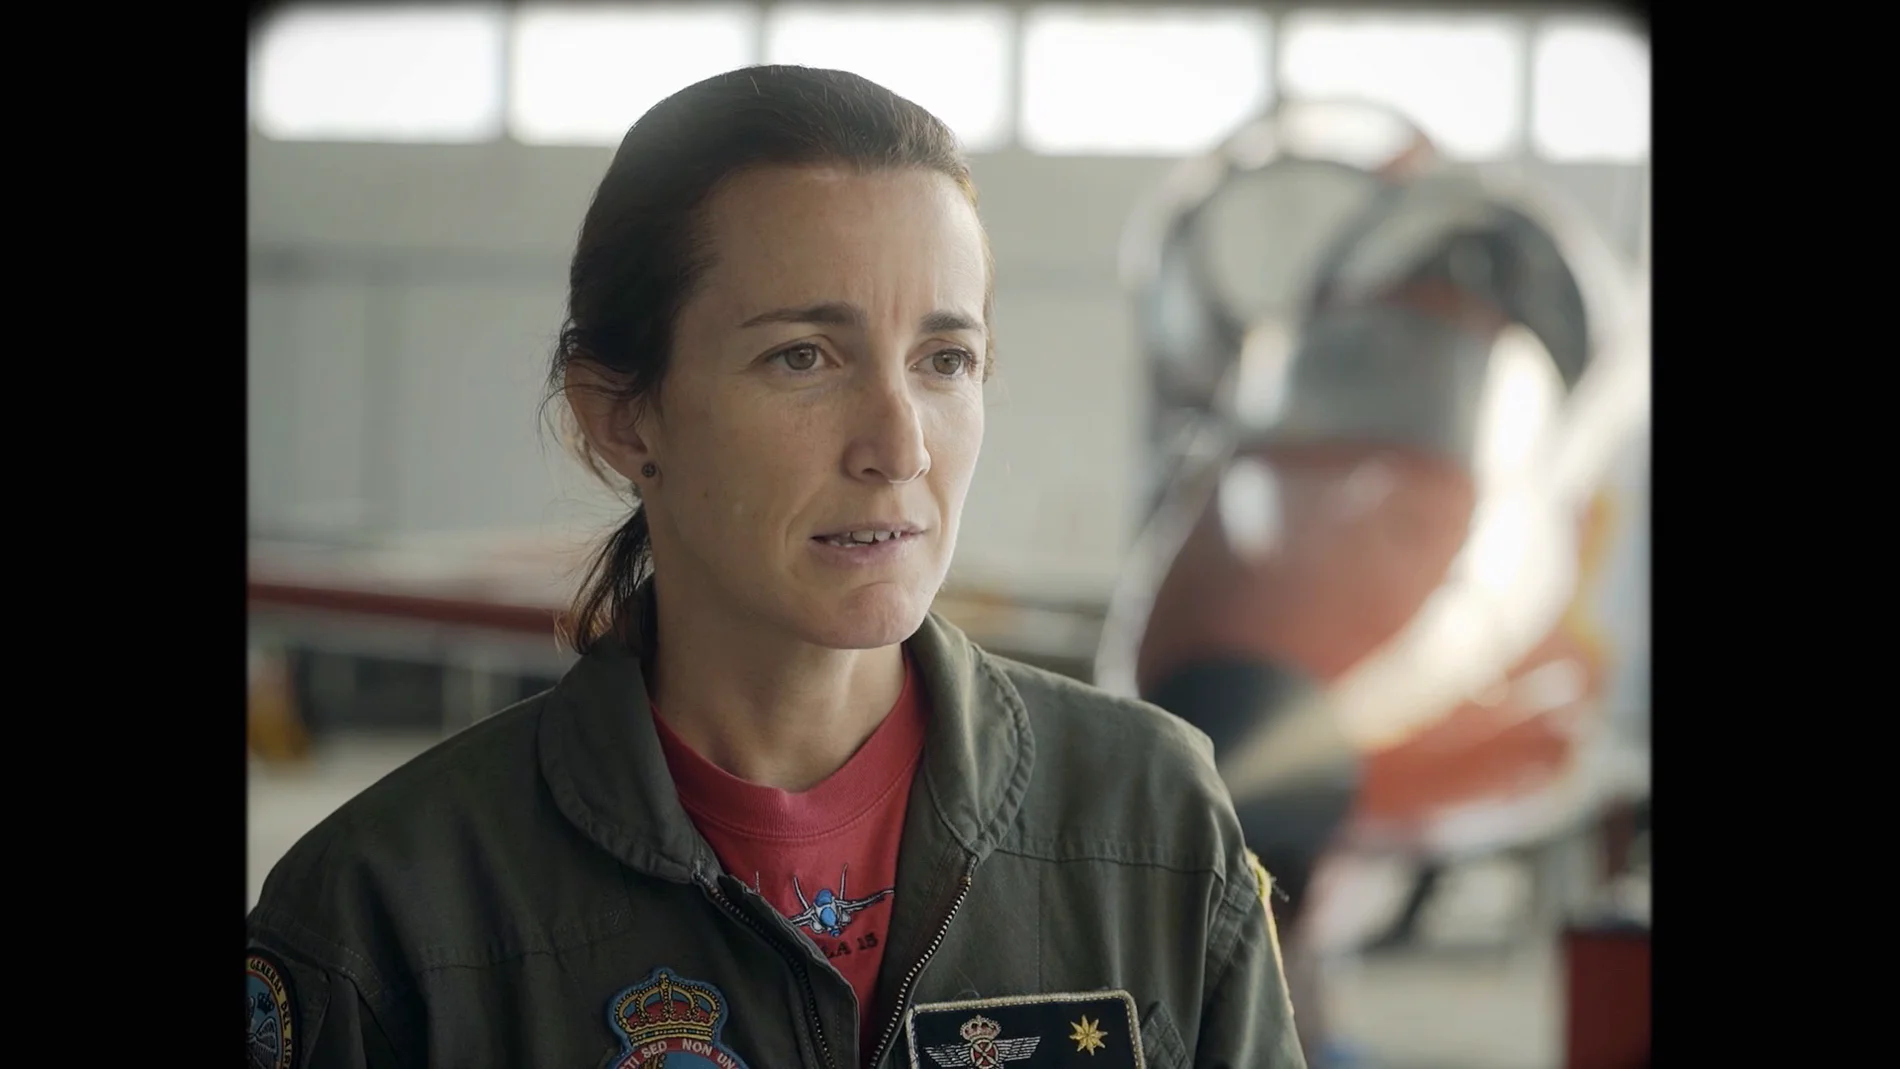 La primera piloto de caza, la primera ministra de Defensa, la primera mujer general: los avances de la mujer en el Ejército